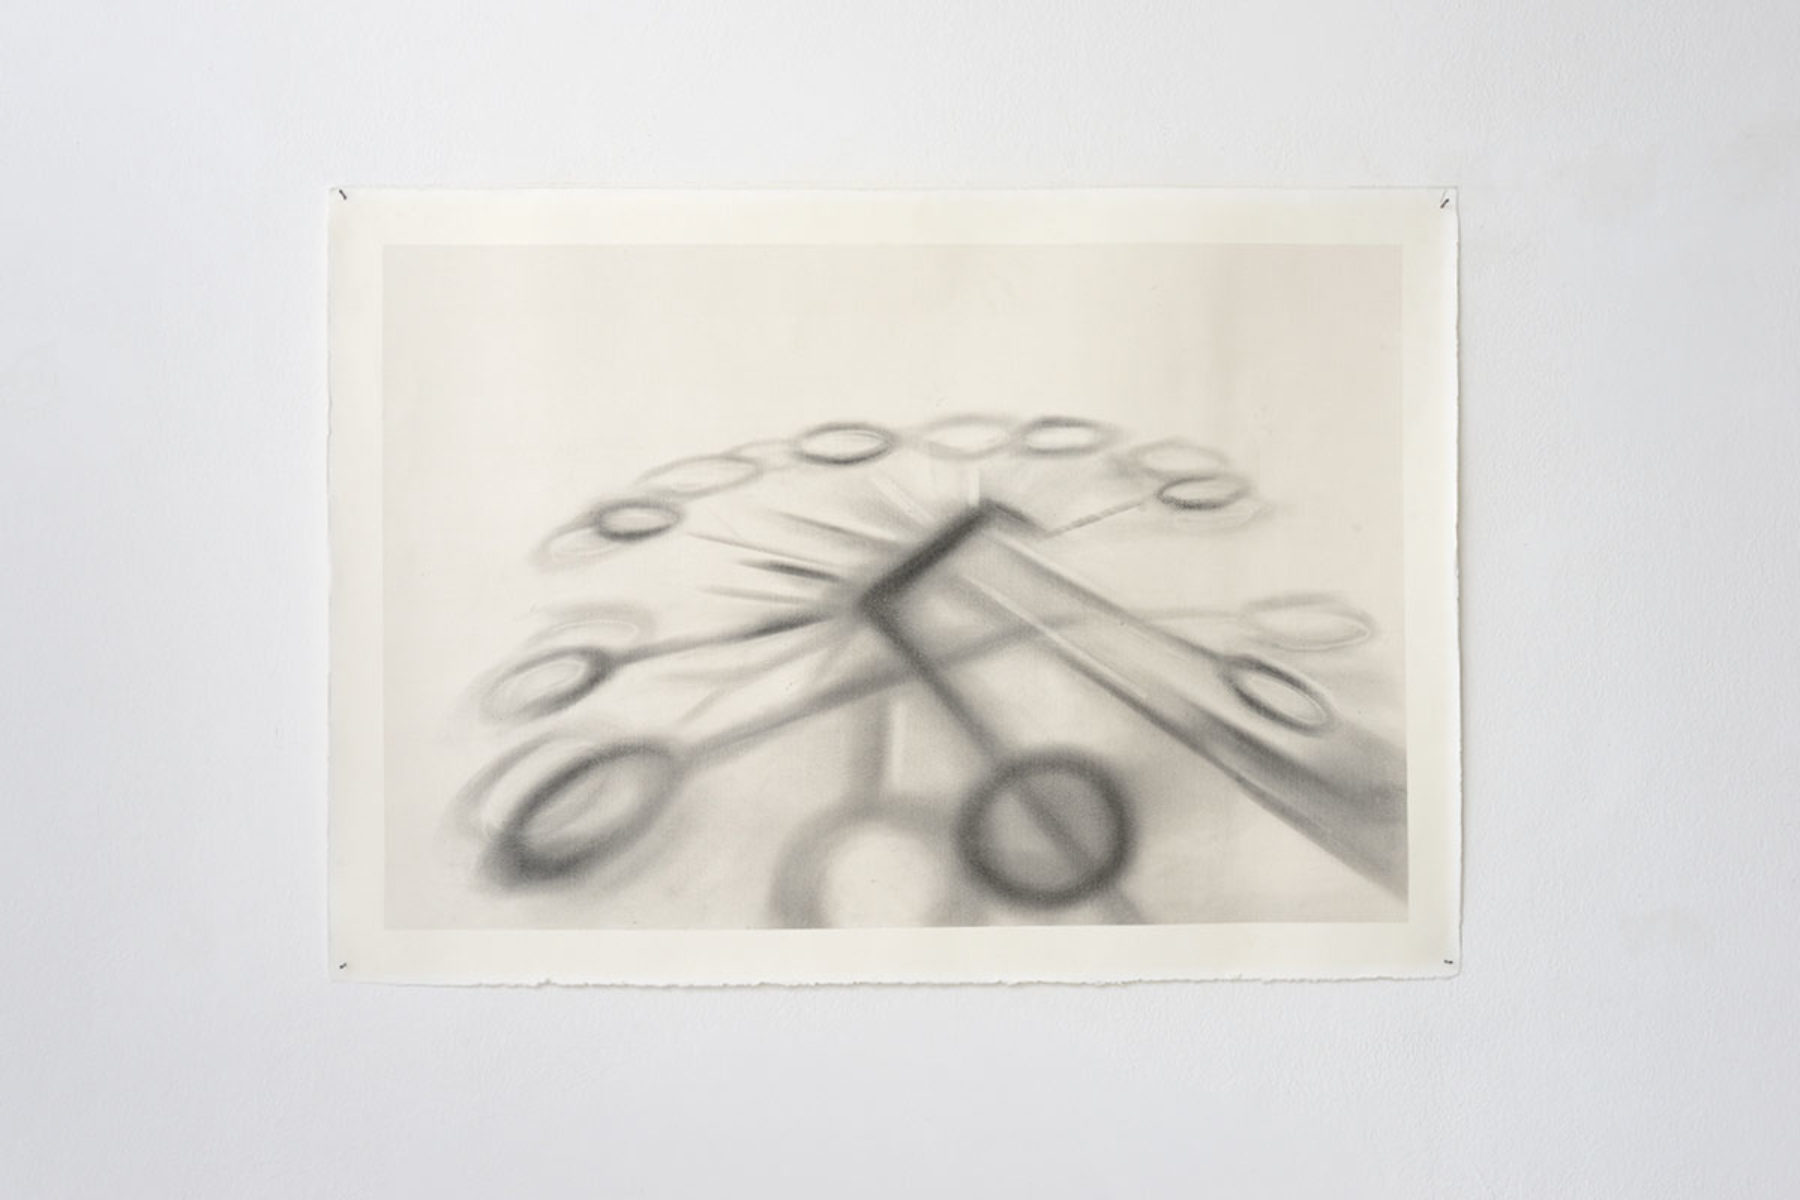 Antonio Marchetti Lamera, Raggi ombrosi, 2019, graphite on paper, 70 x 100 cm, Studio la Città, Verona, ph. M.A. Sereni